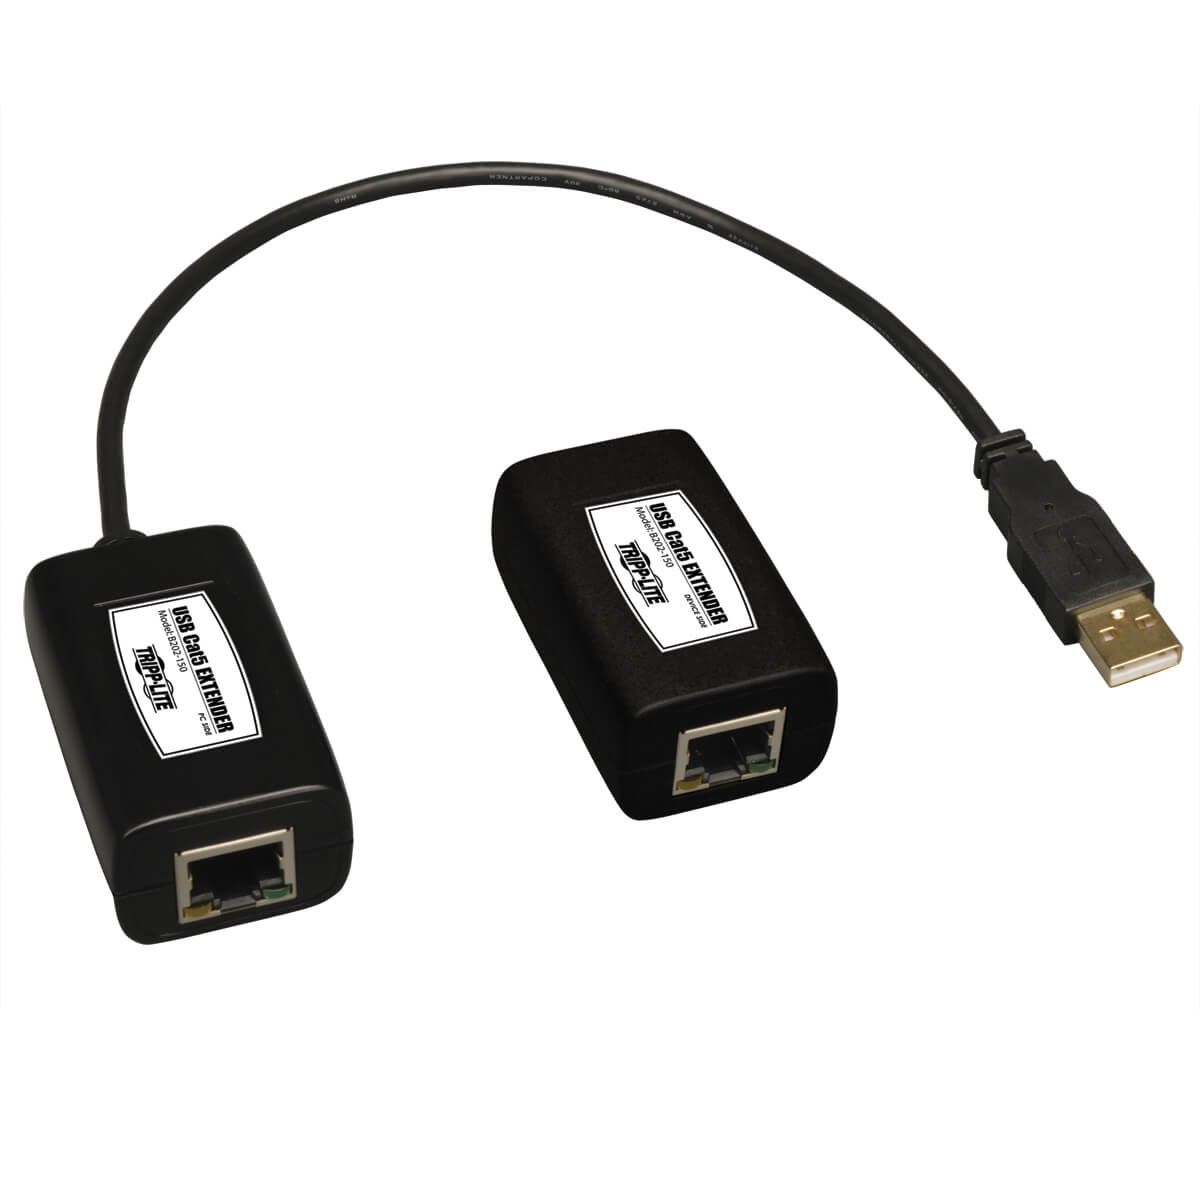 Tripplite Extender (přijímač a vysílač), 1-port USB přes Cat5/Cat6, až 45.72m